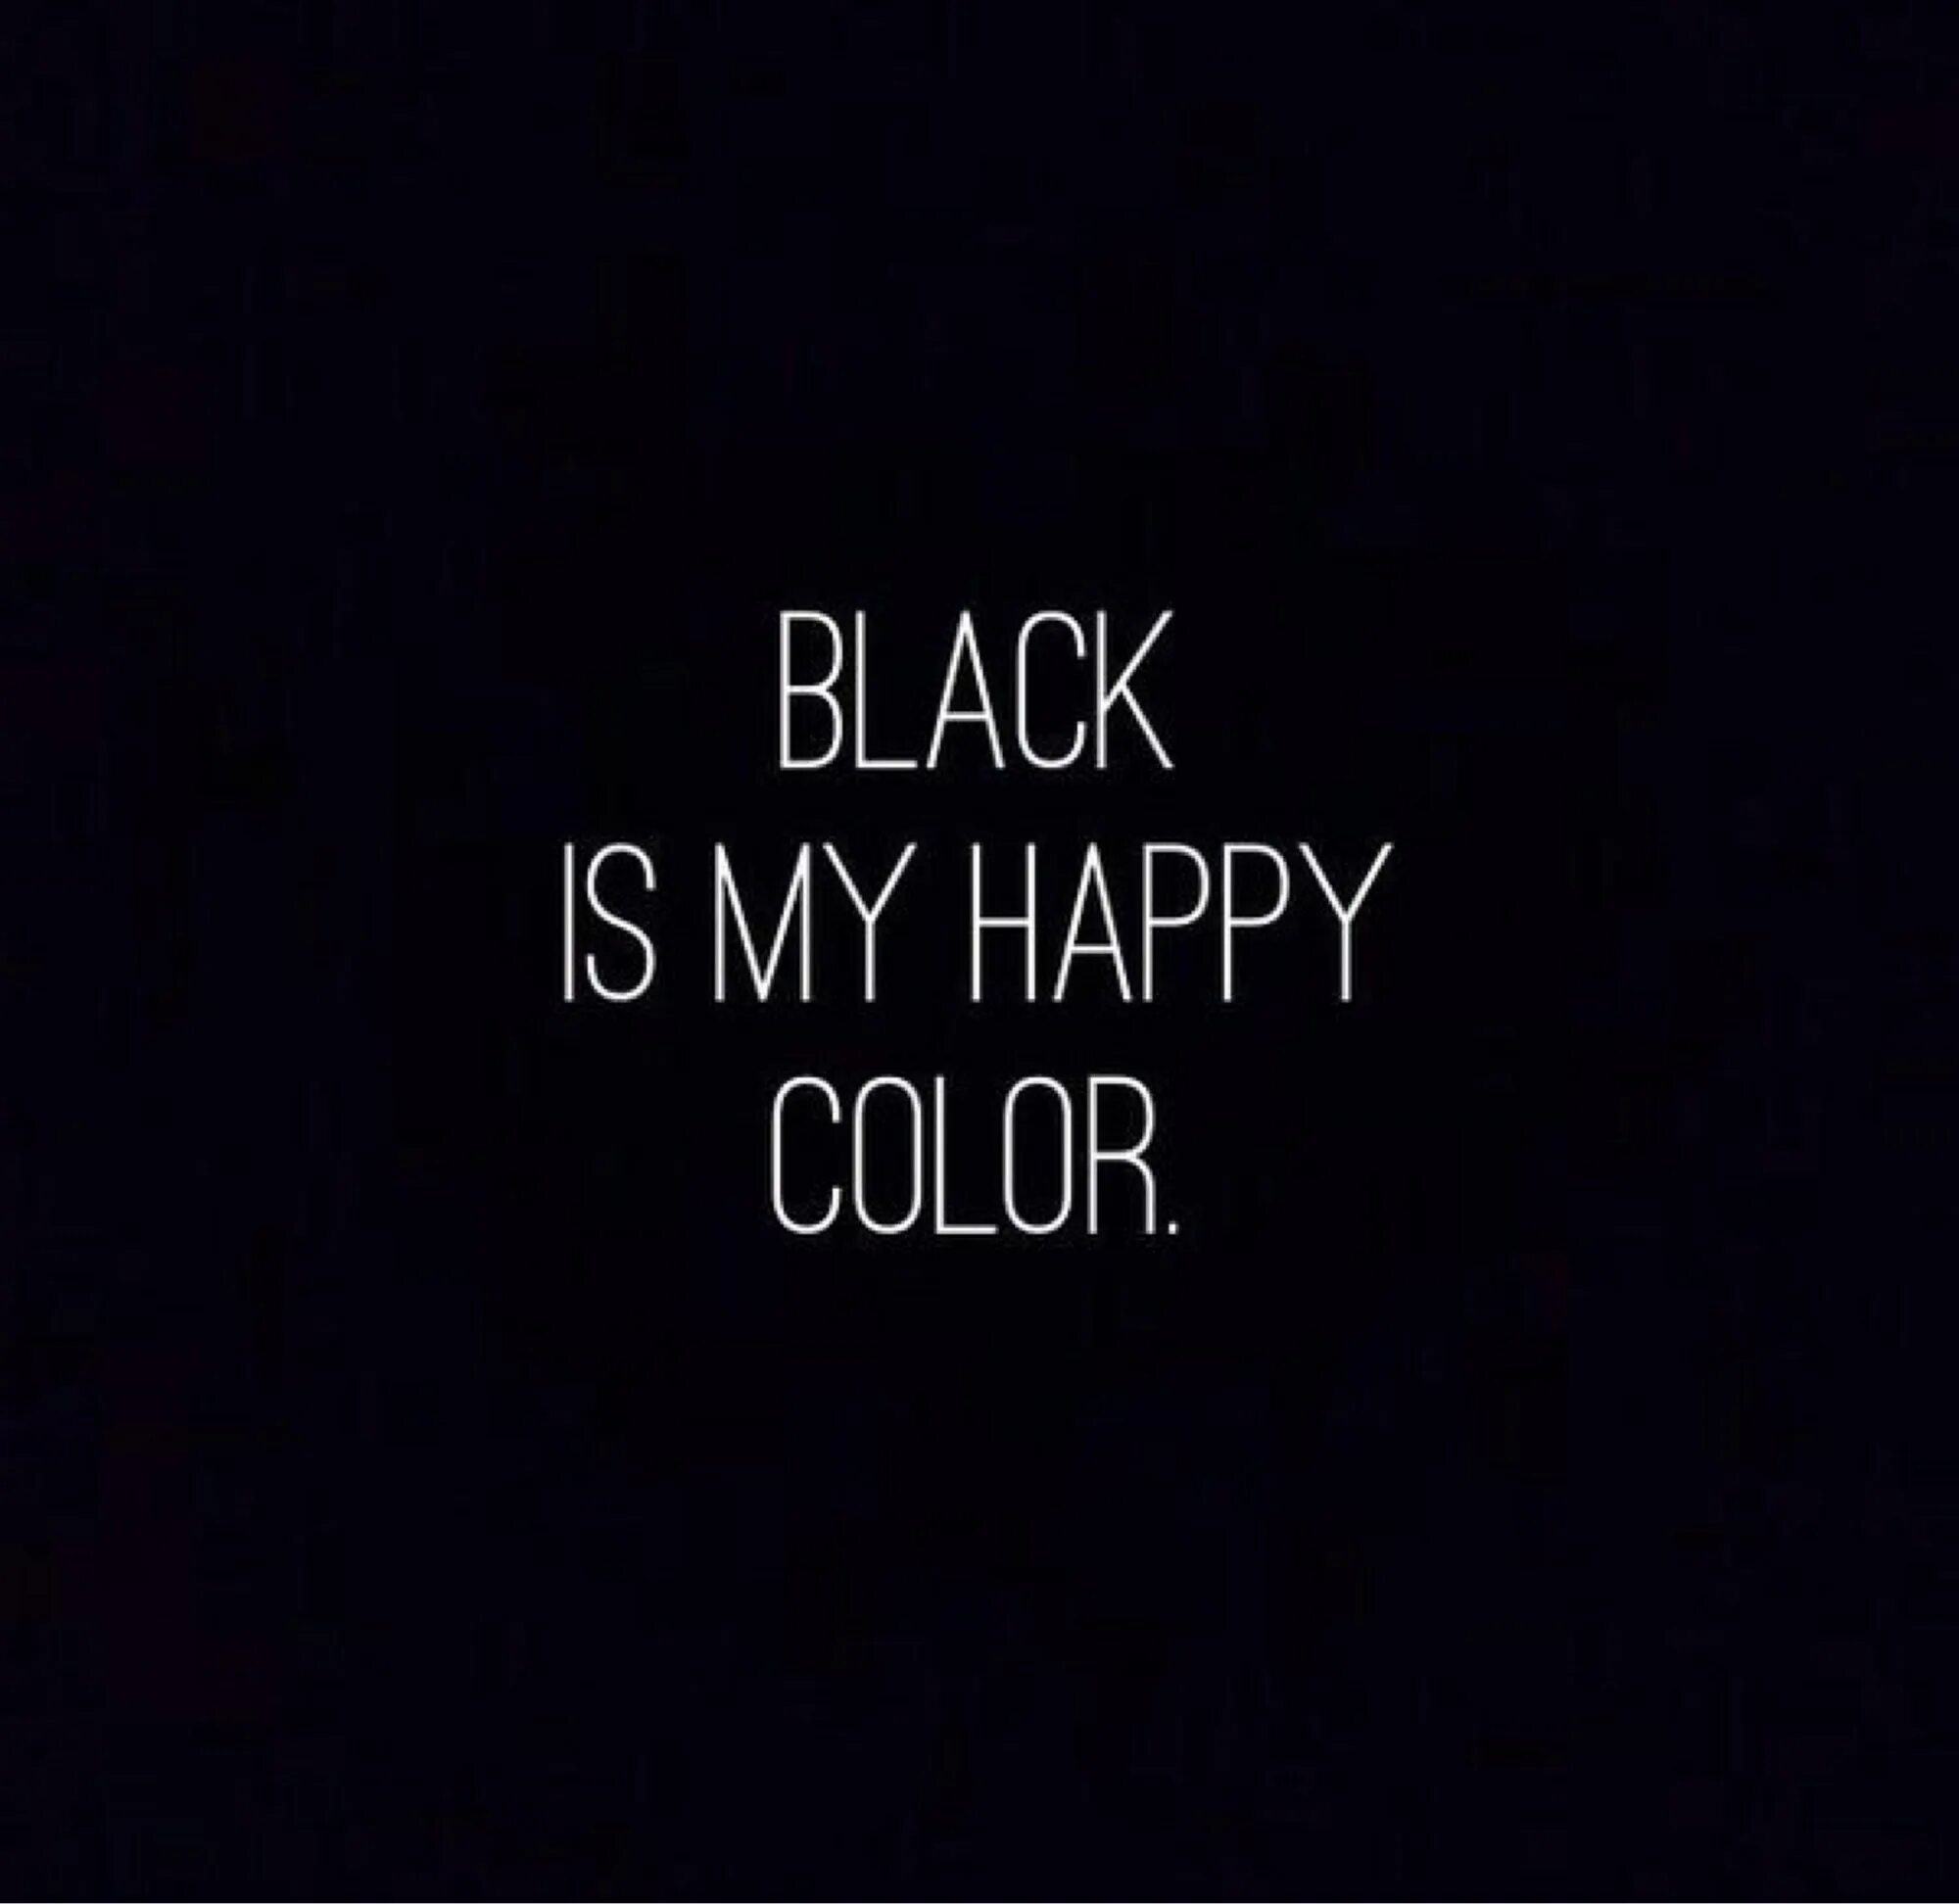 Любимый черный на английском. Черный мой счастливый цвет. Черный мой любимый цвет. Я люблю черный цвет. Black is my Happy Color.